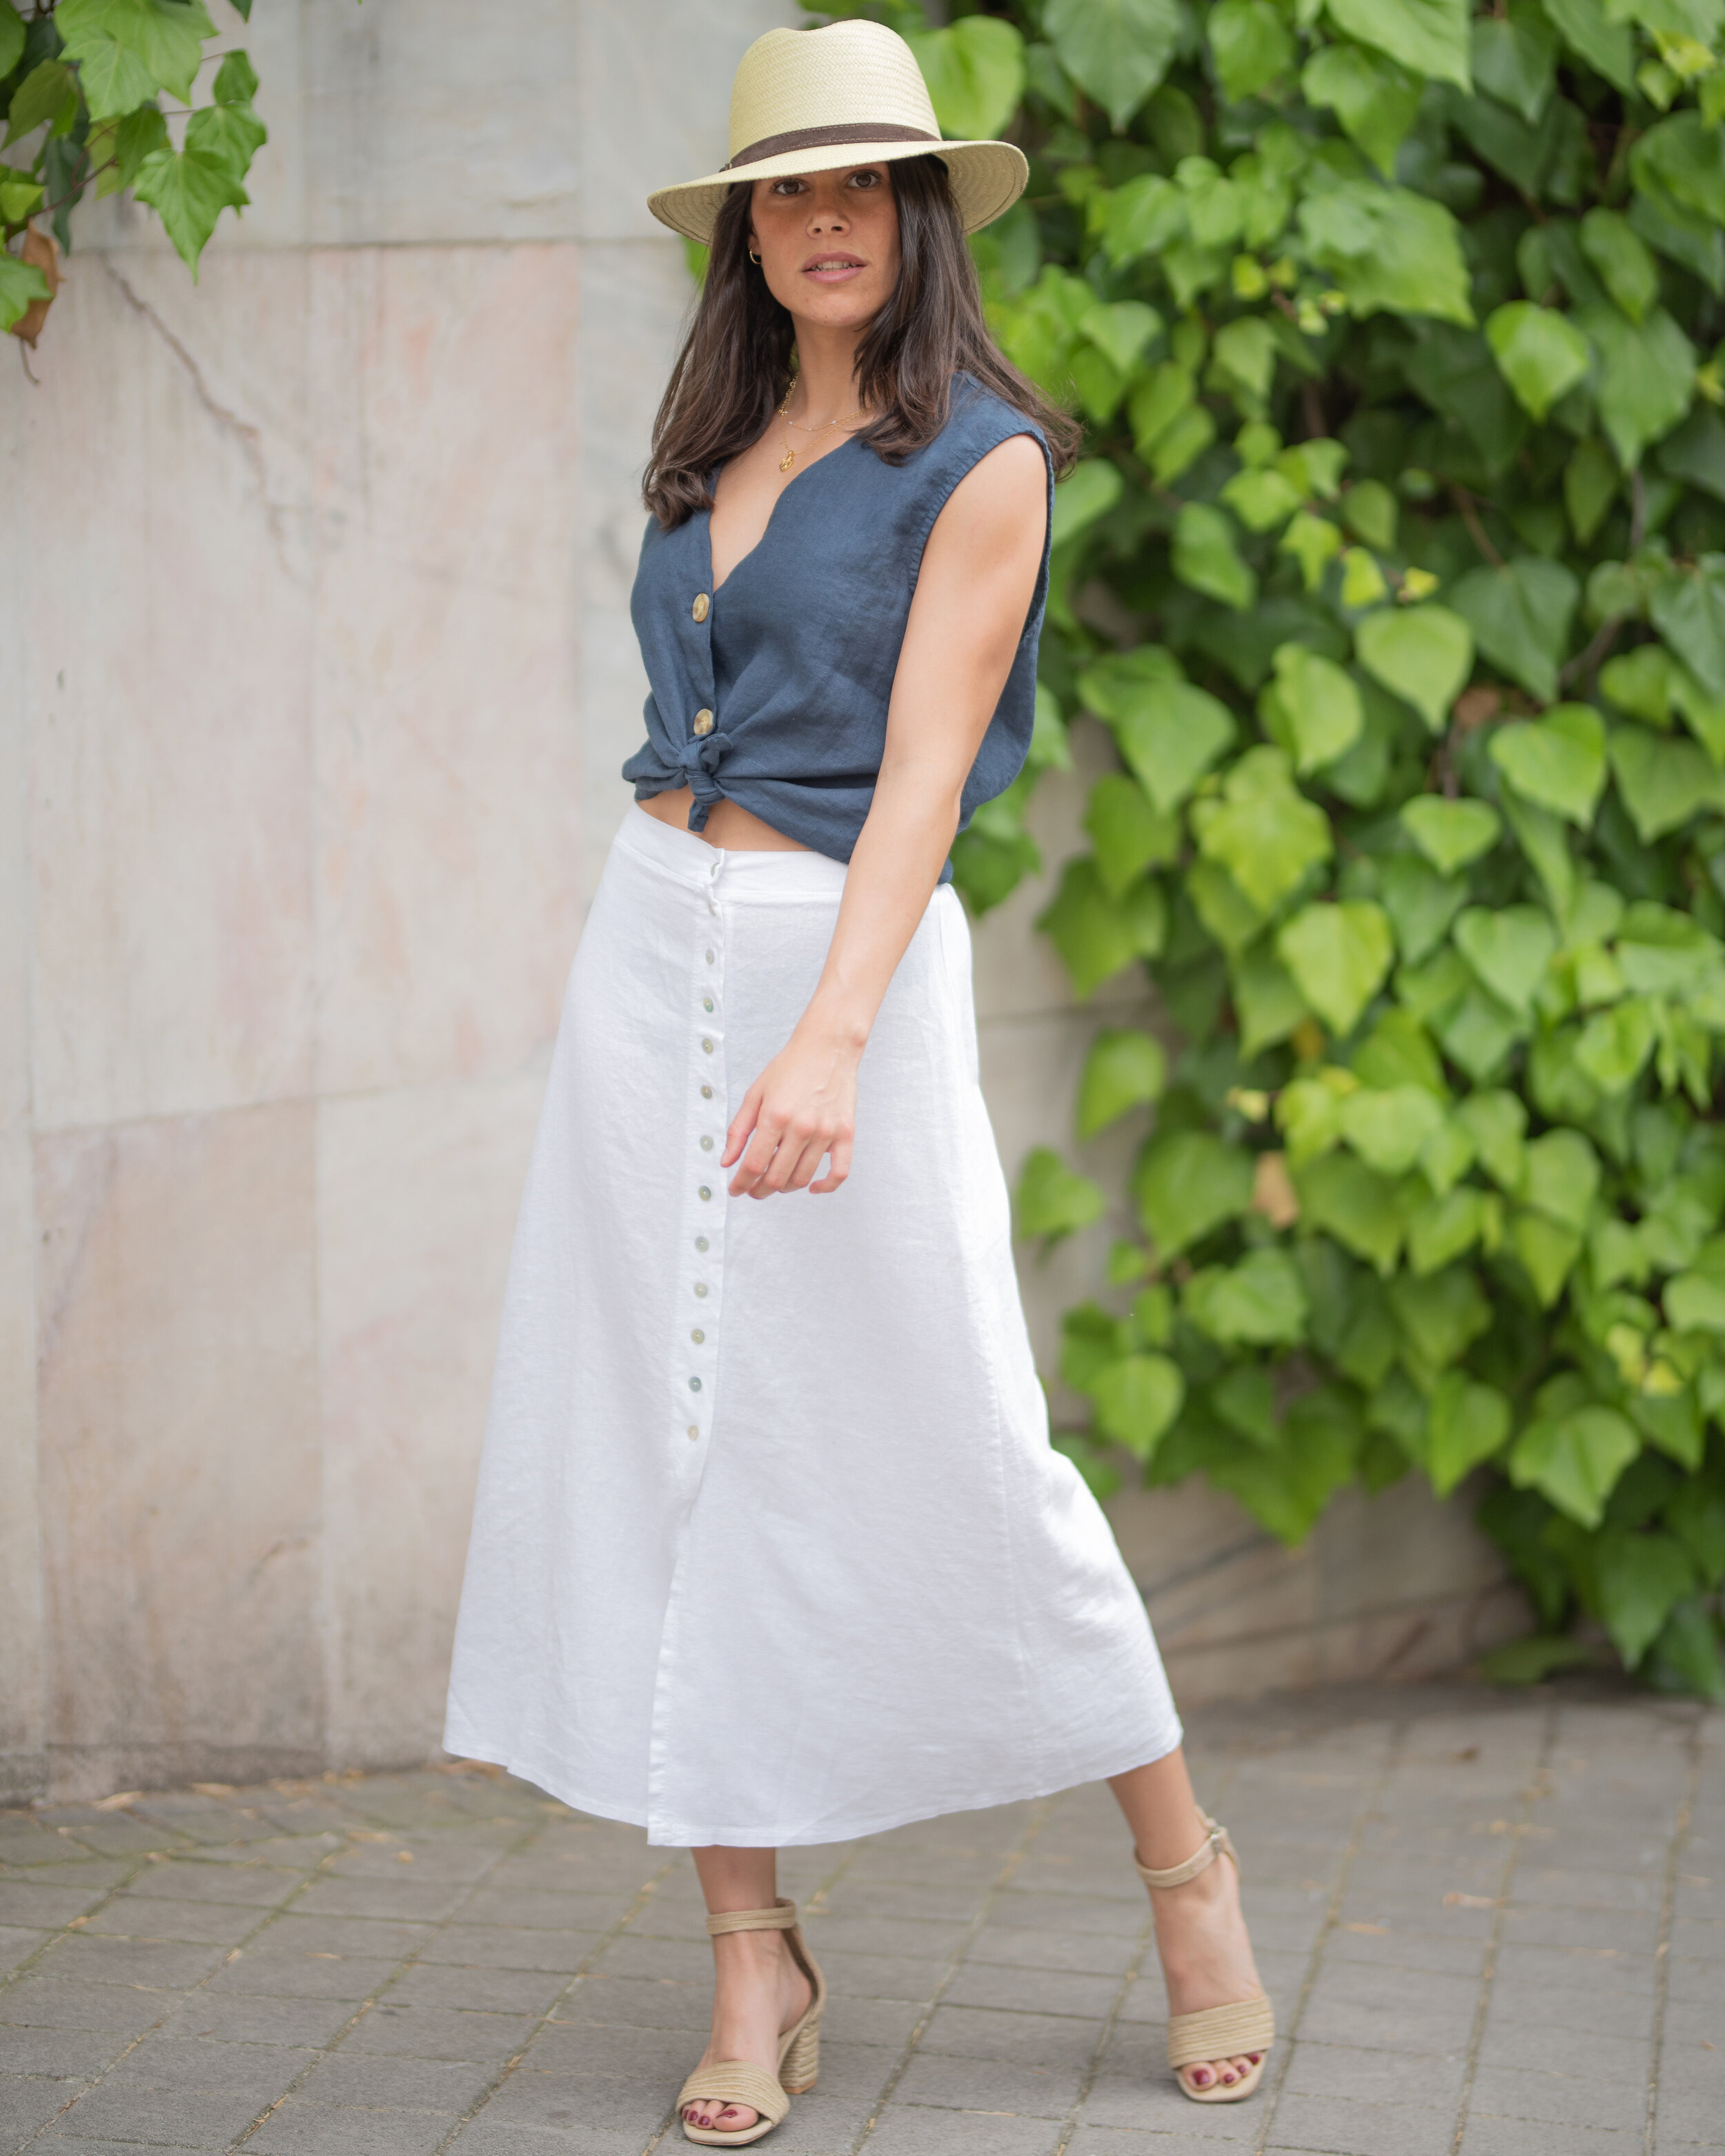 Cómo combinar una falda blanca — Jand | Ropa de Mujer